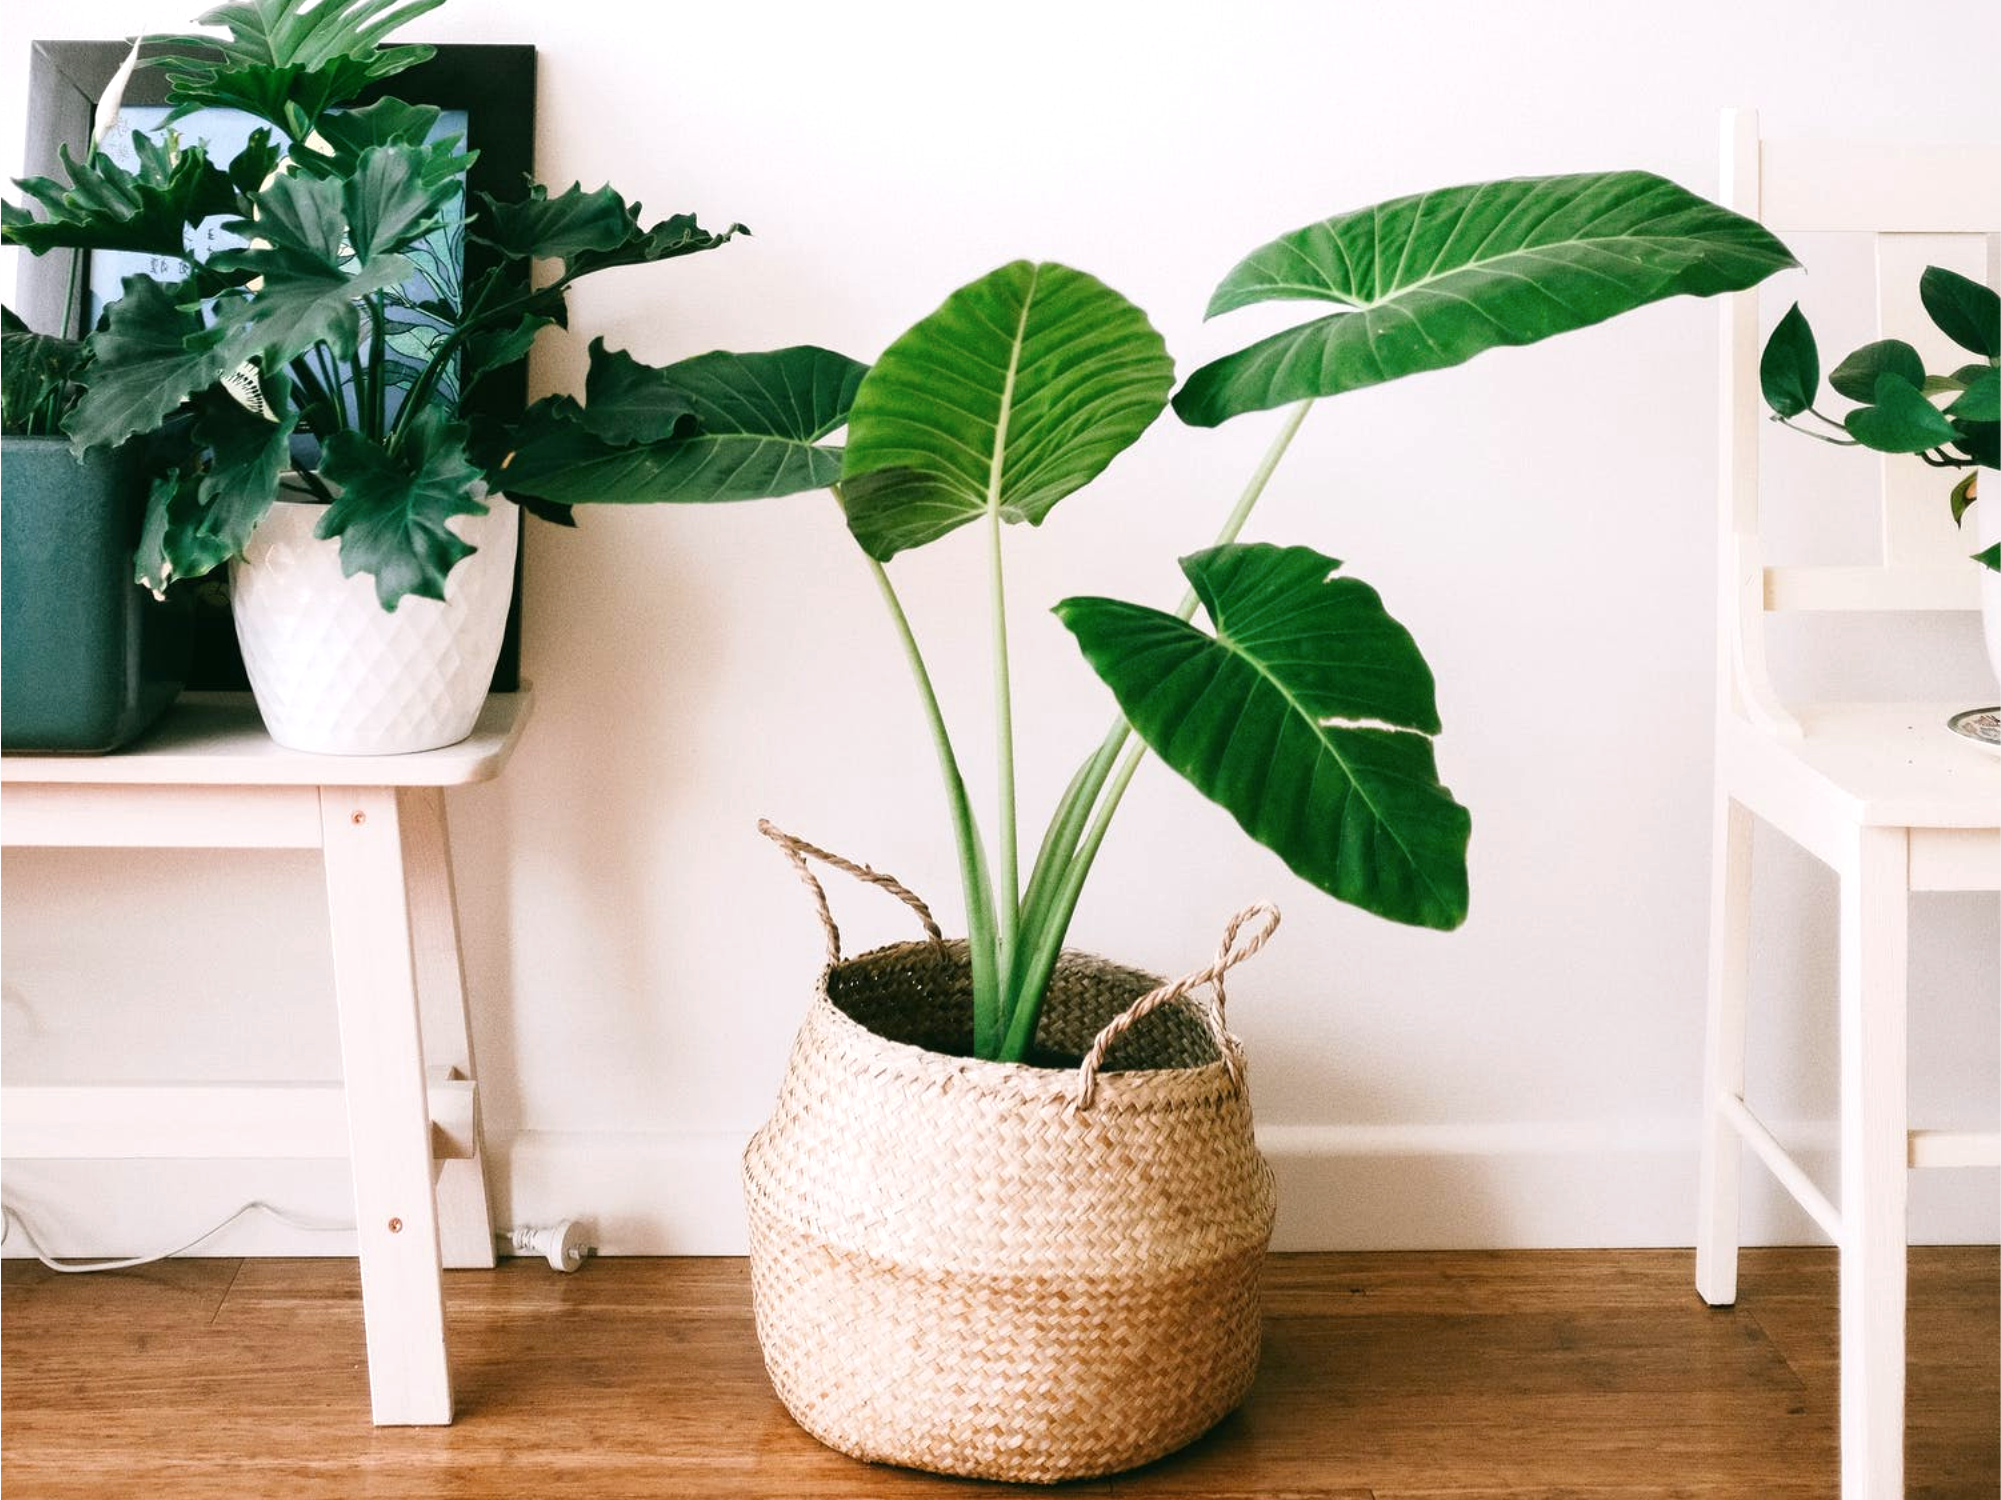 Vasi per piante da interno: 5 idee per la tua casa. - Heroplants